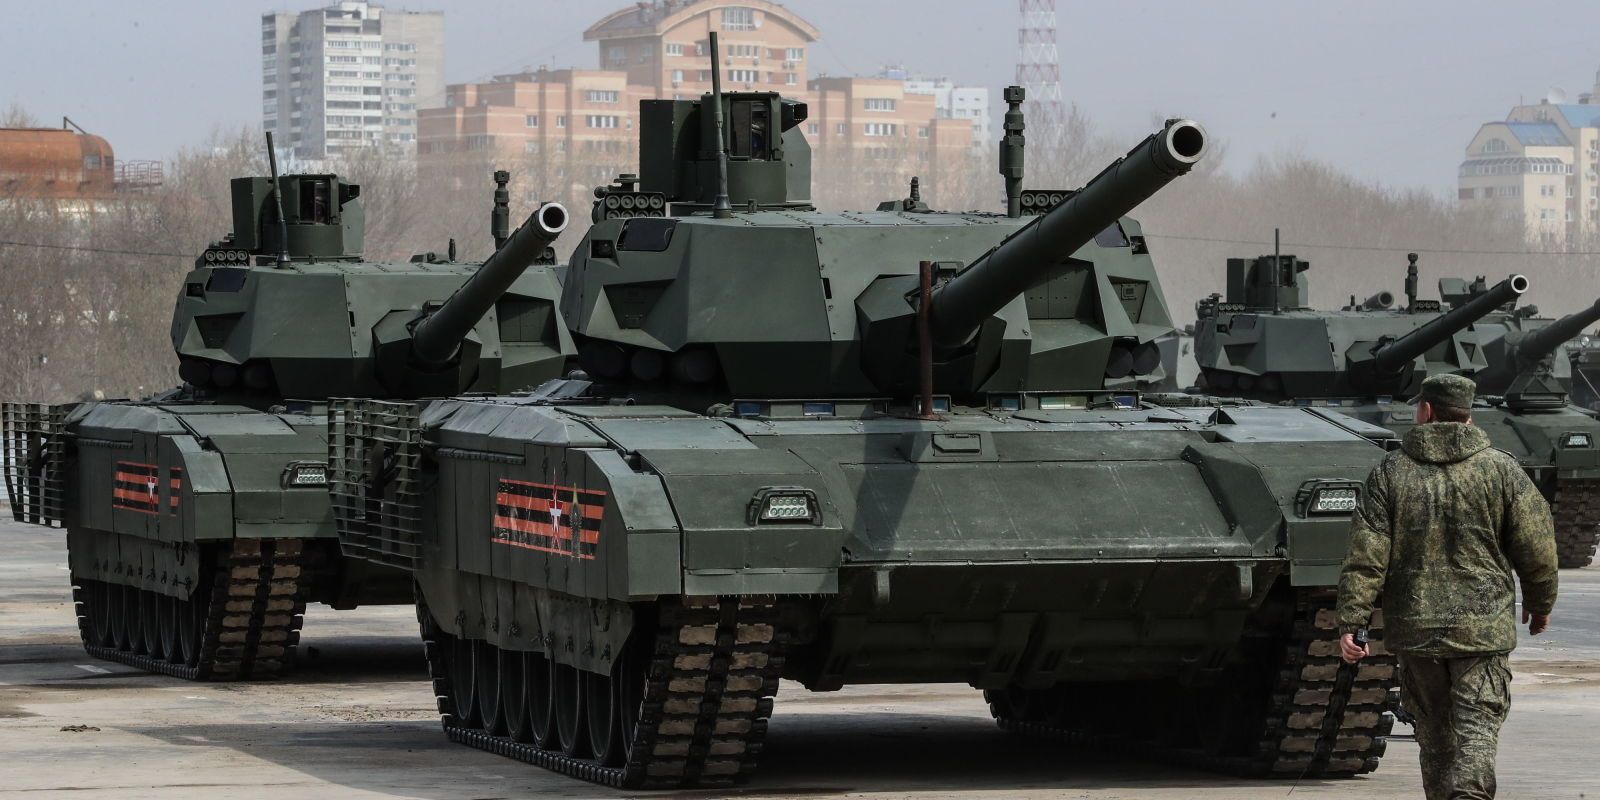 Se retrasa la producción del moderno tanque ruso T-14 Armata debido a su  alto coste. – Galaxia Militar